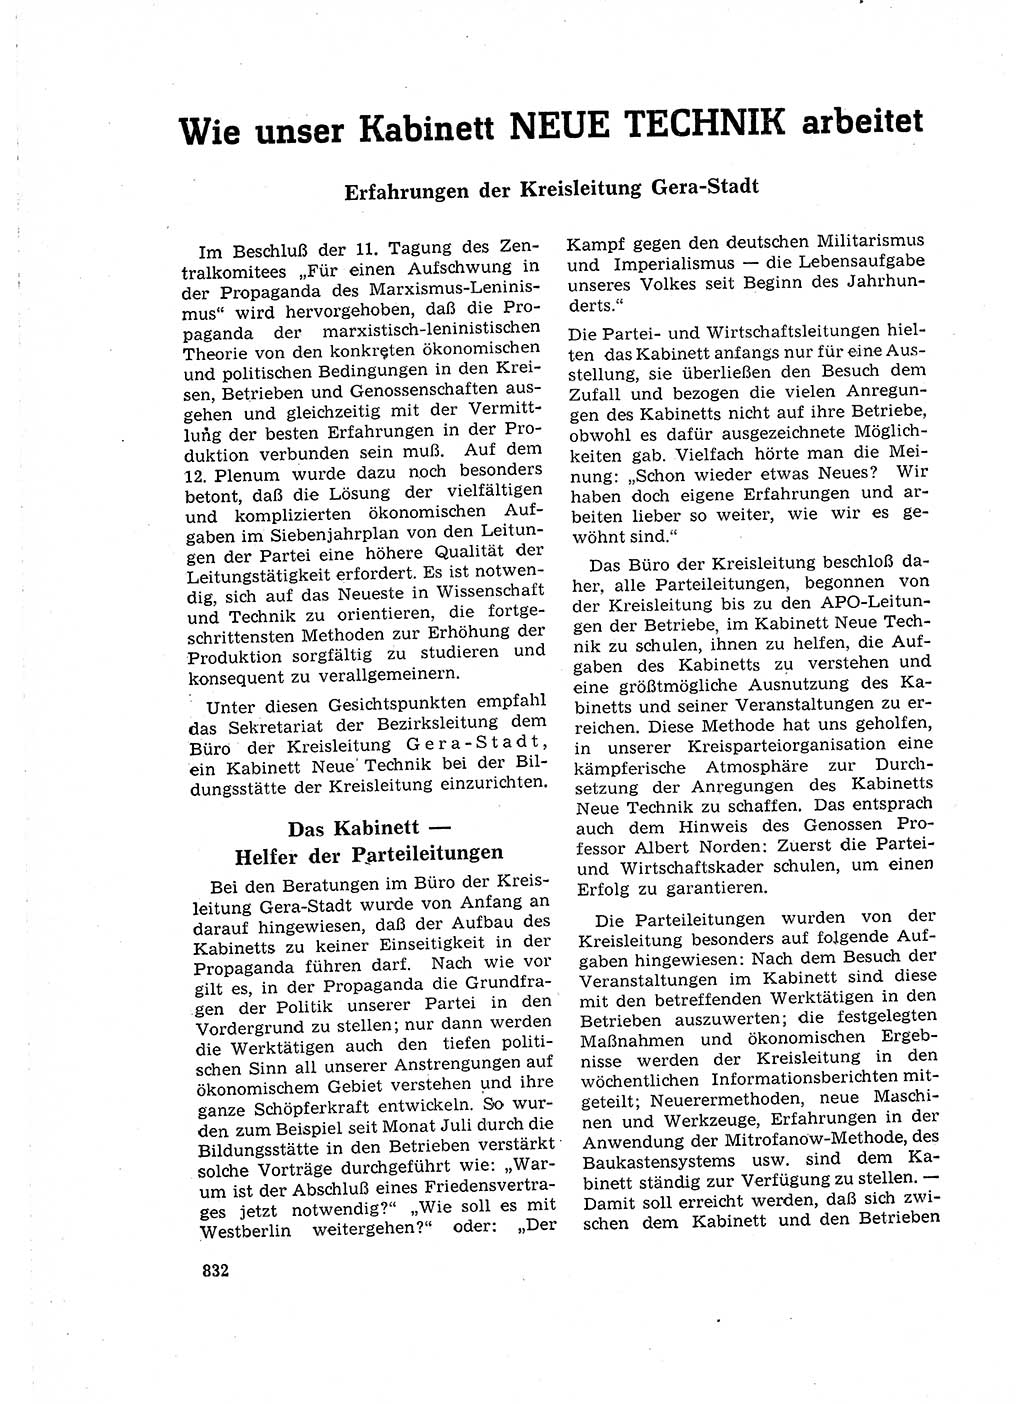 Neuer Weg (NW), Organ des Zentralkomitees (ZK) der SED (Sozialistische Einheitspartei Deutschlands) für Fragen des Parteilebens, 16. Jahrgang [Deutsche Demokratische Republik (DDR)] 1961, Seite 832 (NW ZK SED DDR 1961, S. 832)